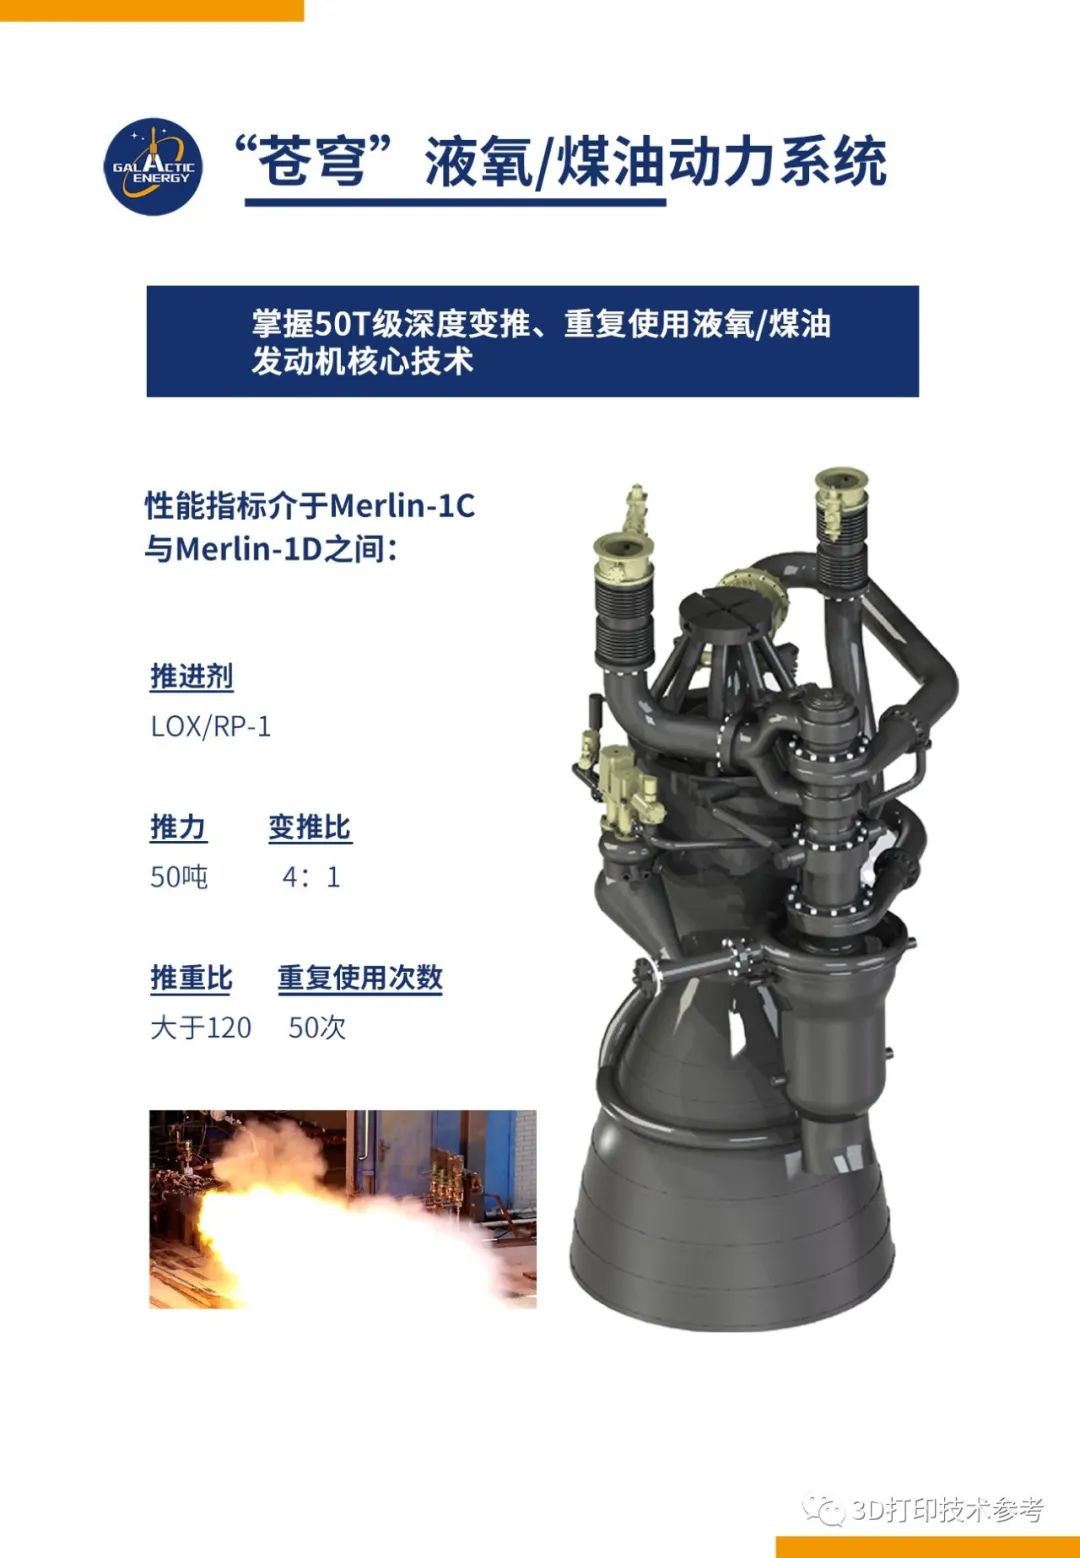 中国民营航天星河动力将3D打印技术用于火箭发动机制造